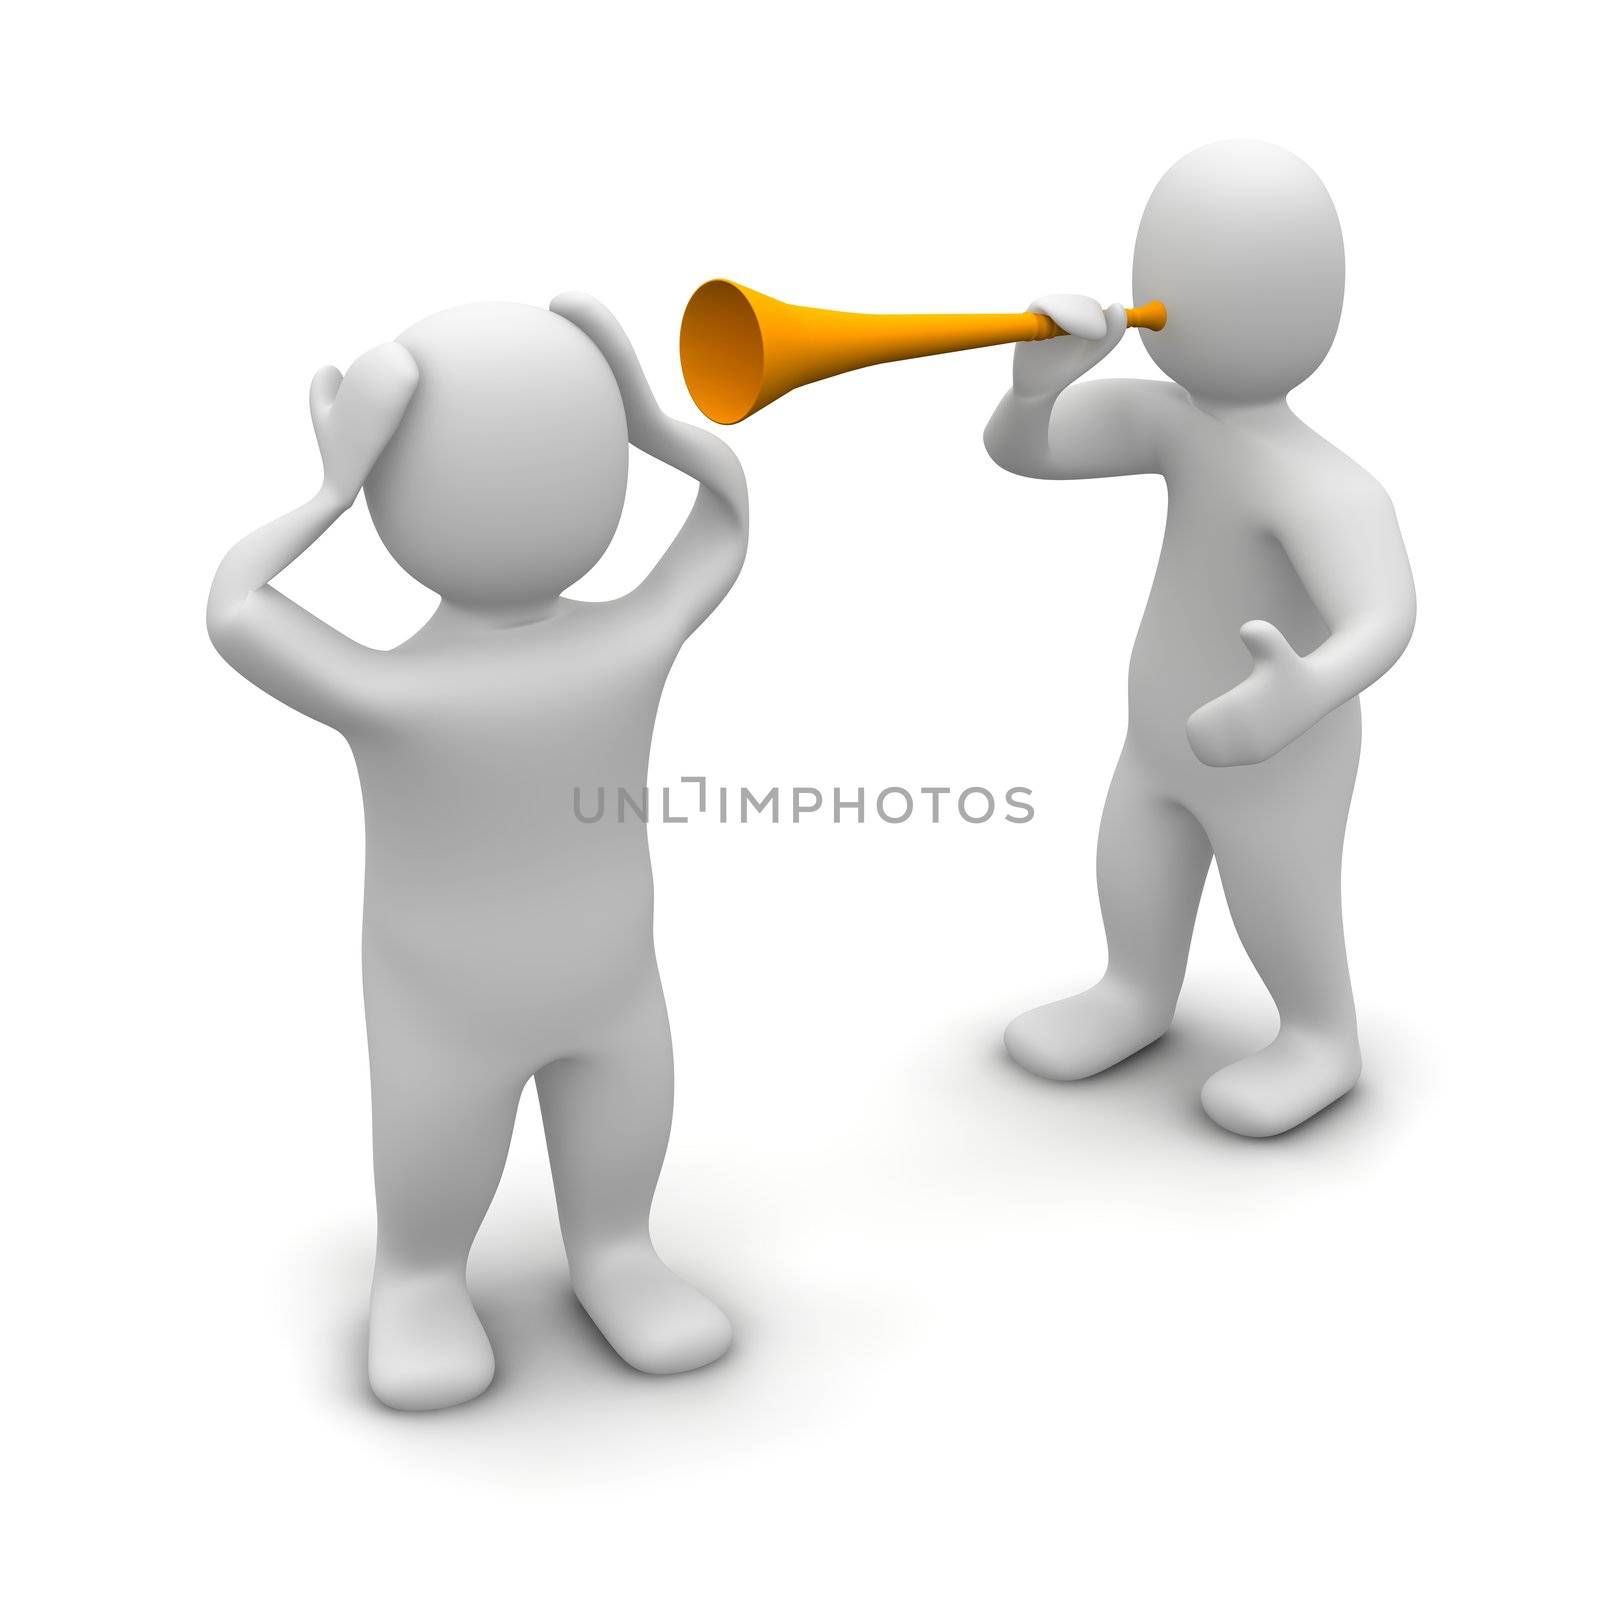 Vuvuzela noise by skvoor